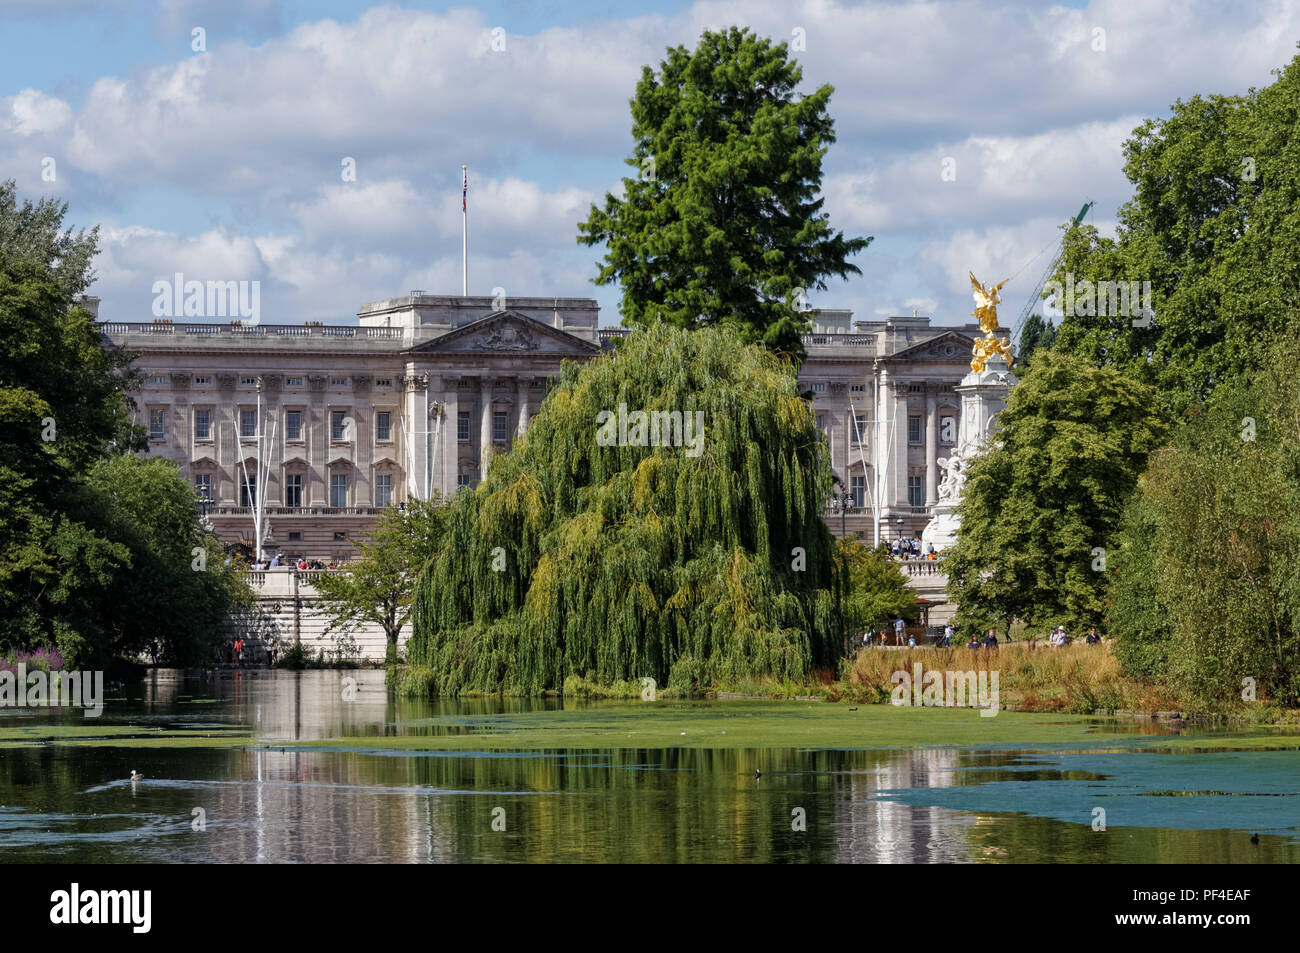 Le parc de St James avec le palais de Buckingham à Londres, Angleterre Royaume-Uni UK Banque D'Images